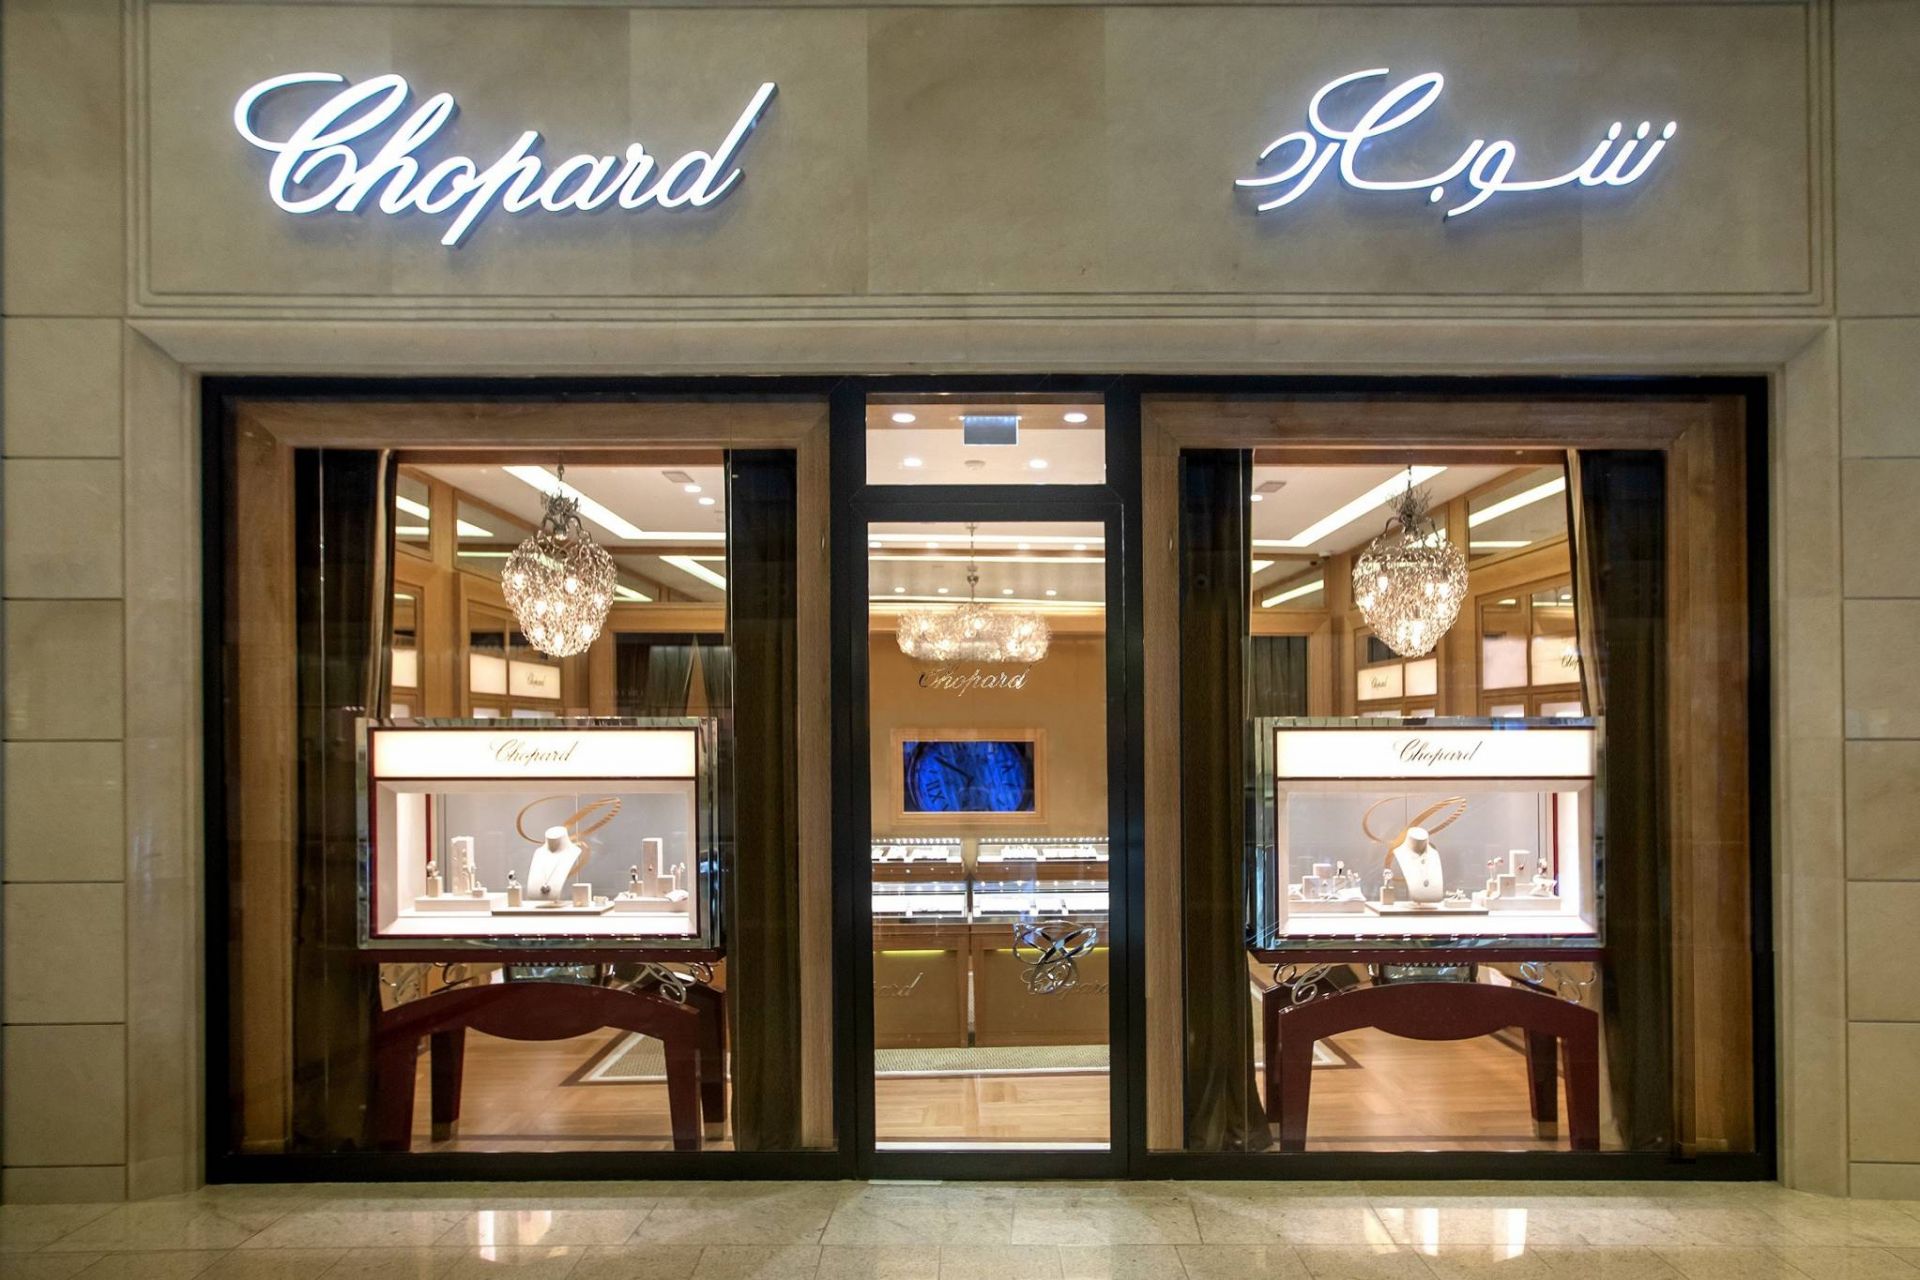 New Chopard boutique at DFC Qatar